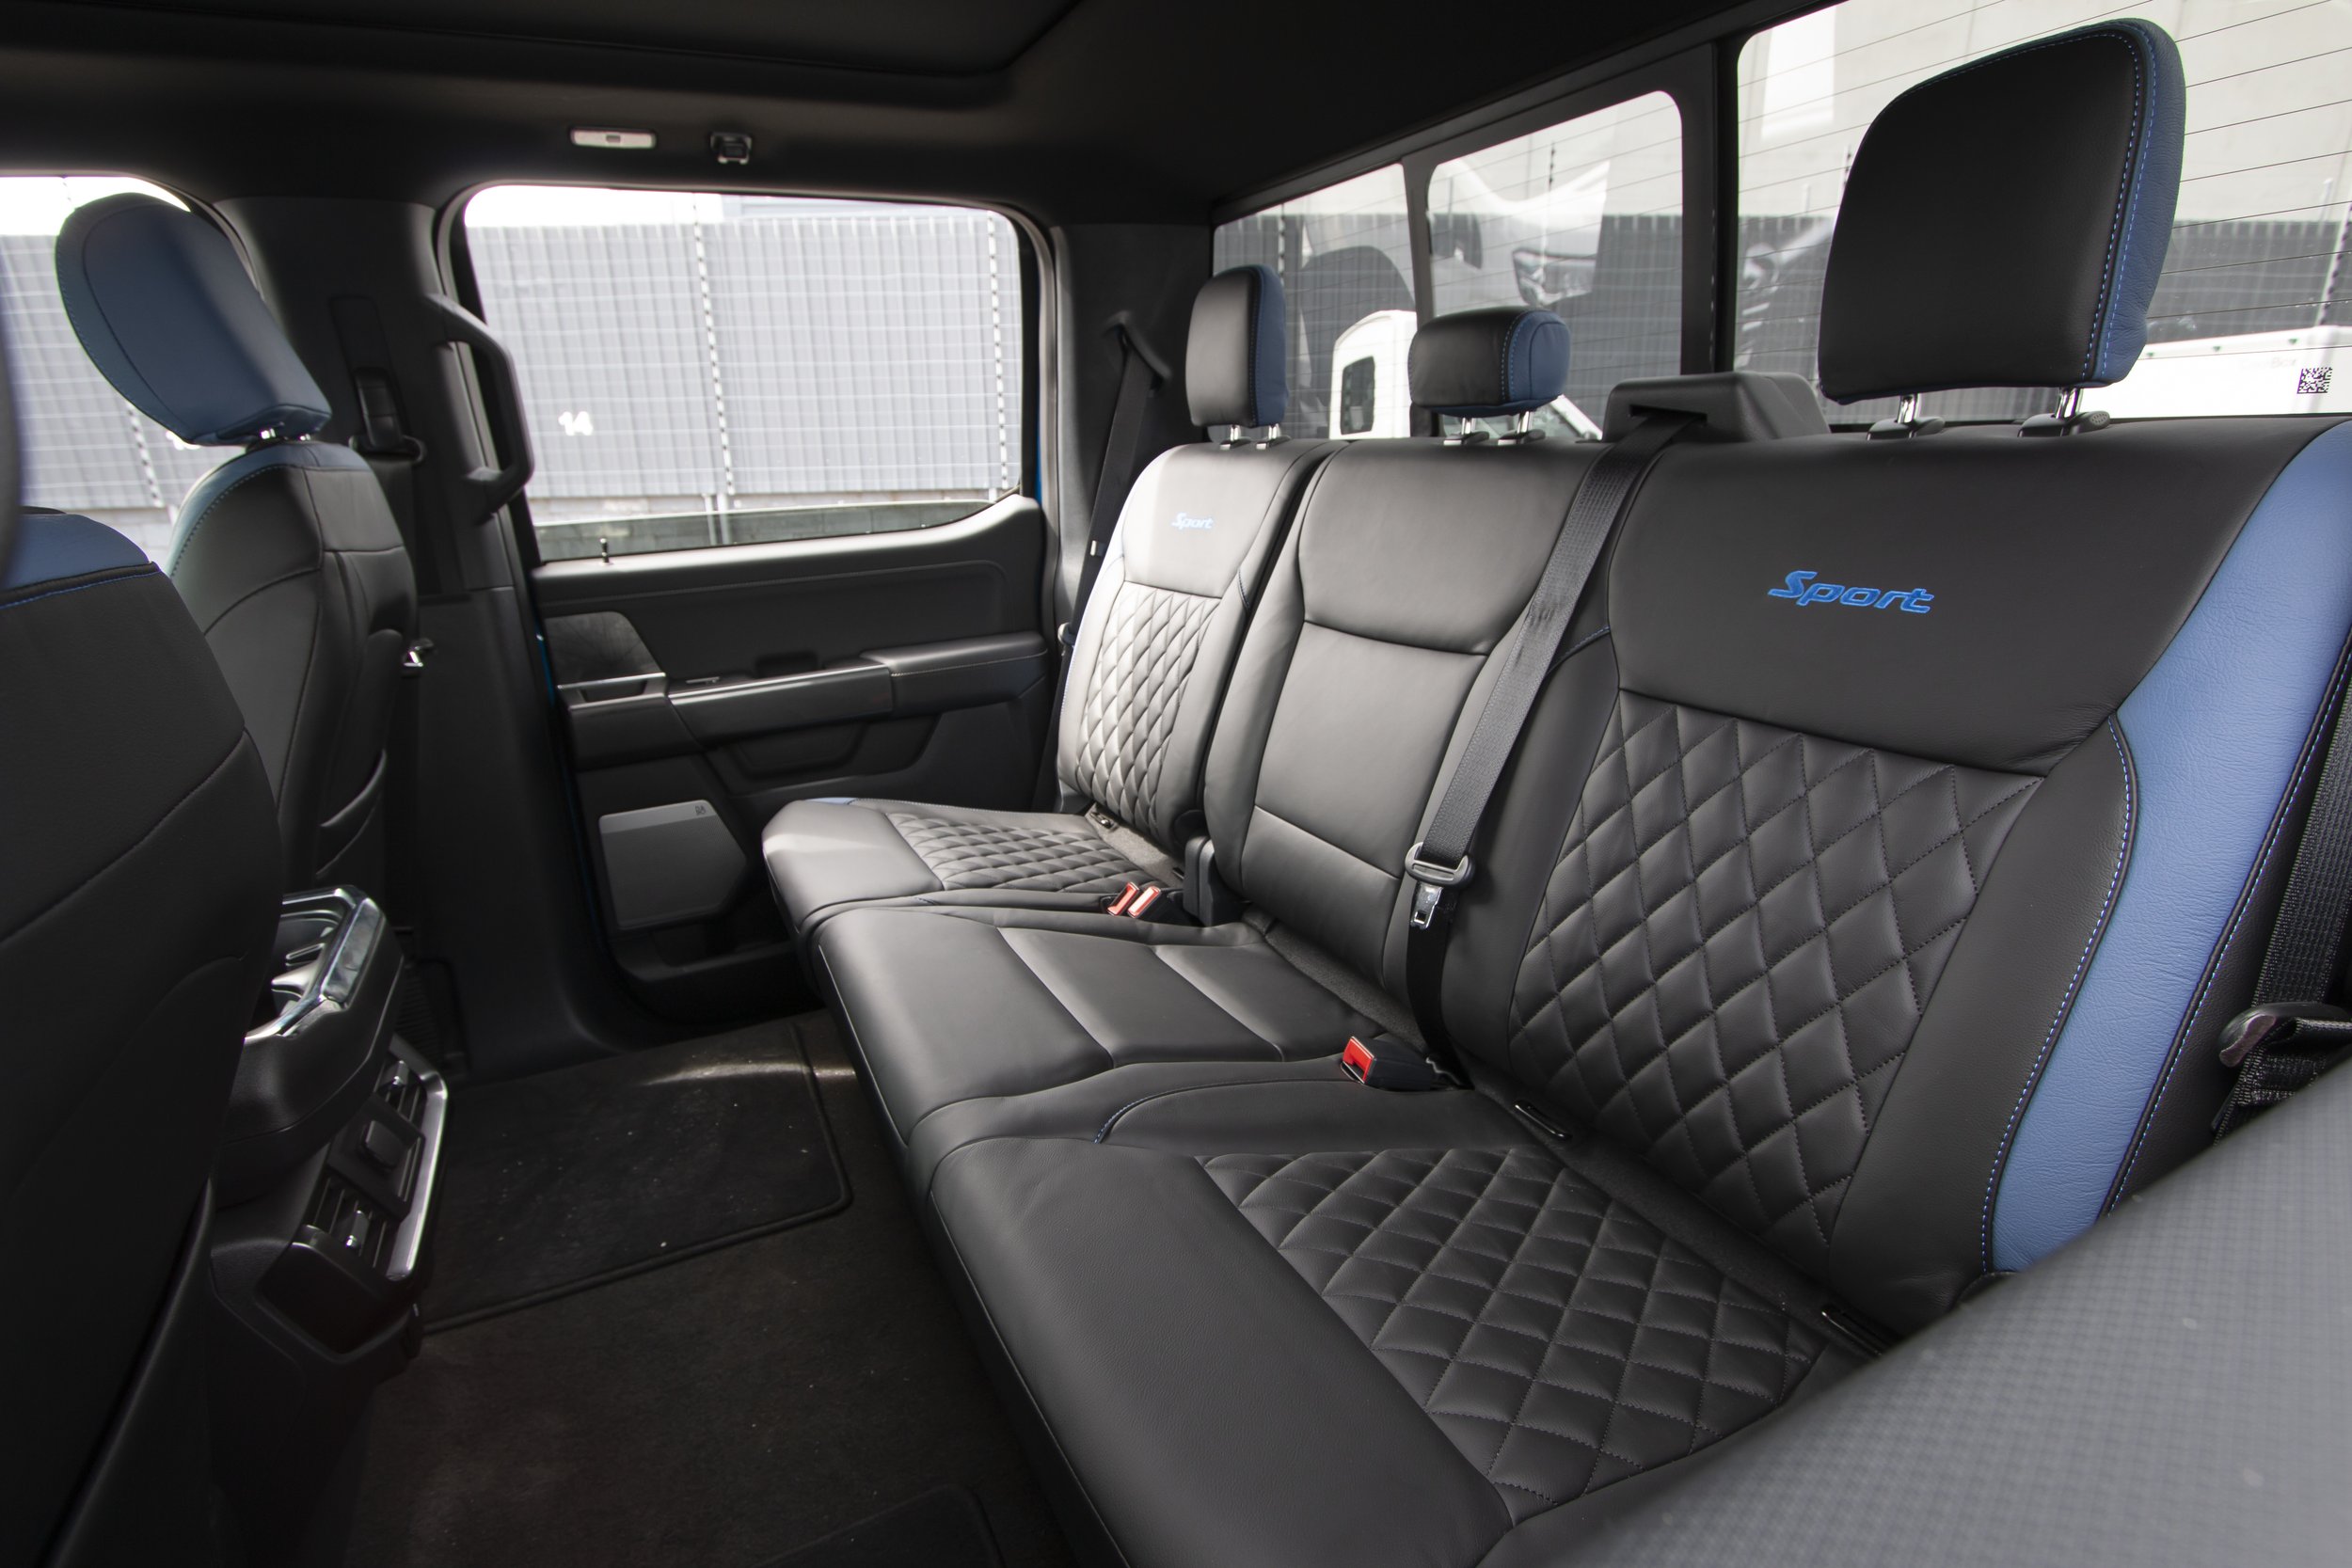 2022 Ford F-150 interior 22.jpg